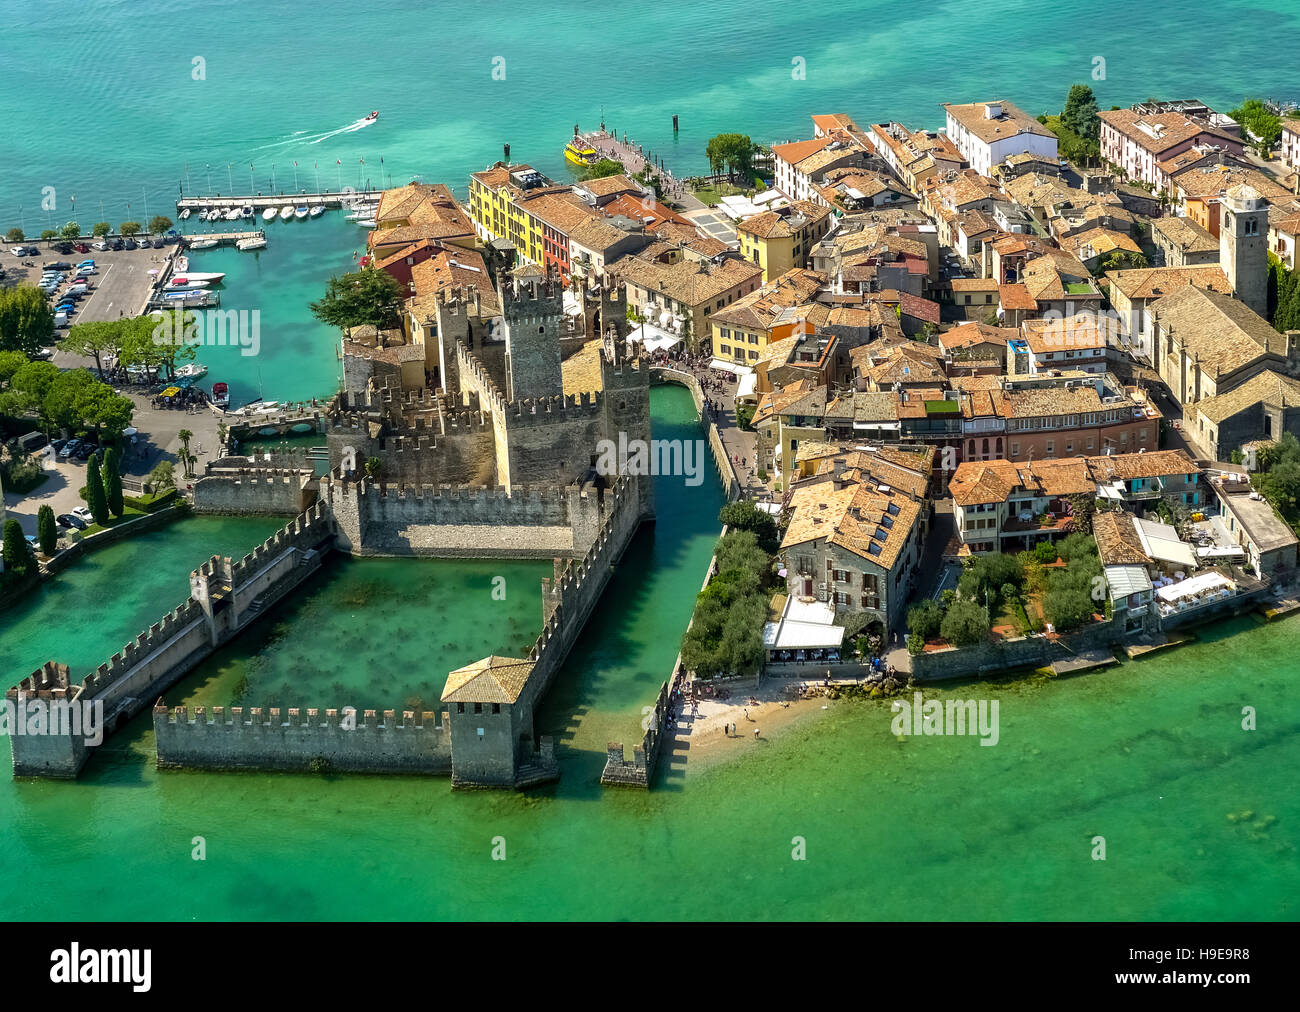 Foto aerea, il centro storico di Sirmione, penisola di Sirmione a lago di Garda, Lago di Garda, Sirmione, Italia settentrionale, Lombardia, Foto Stock